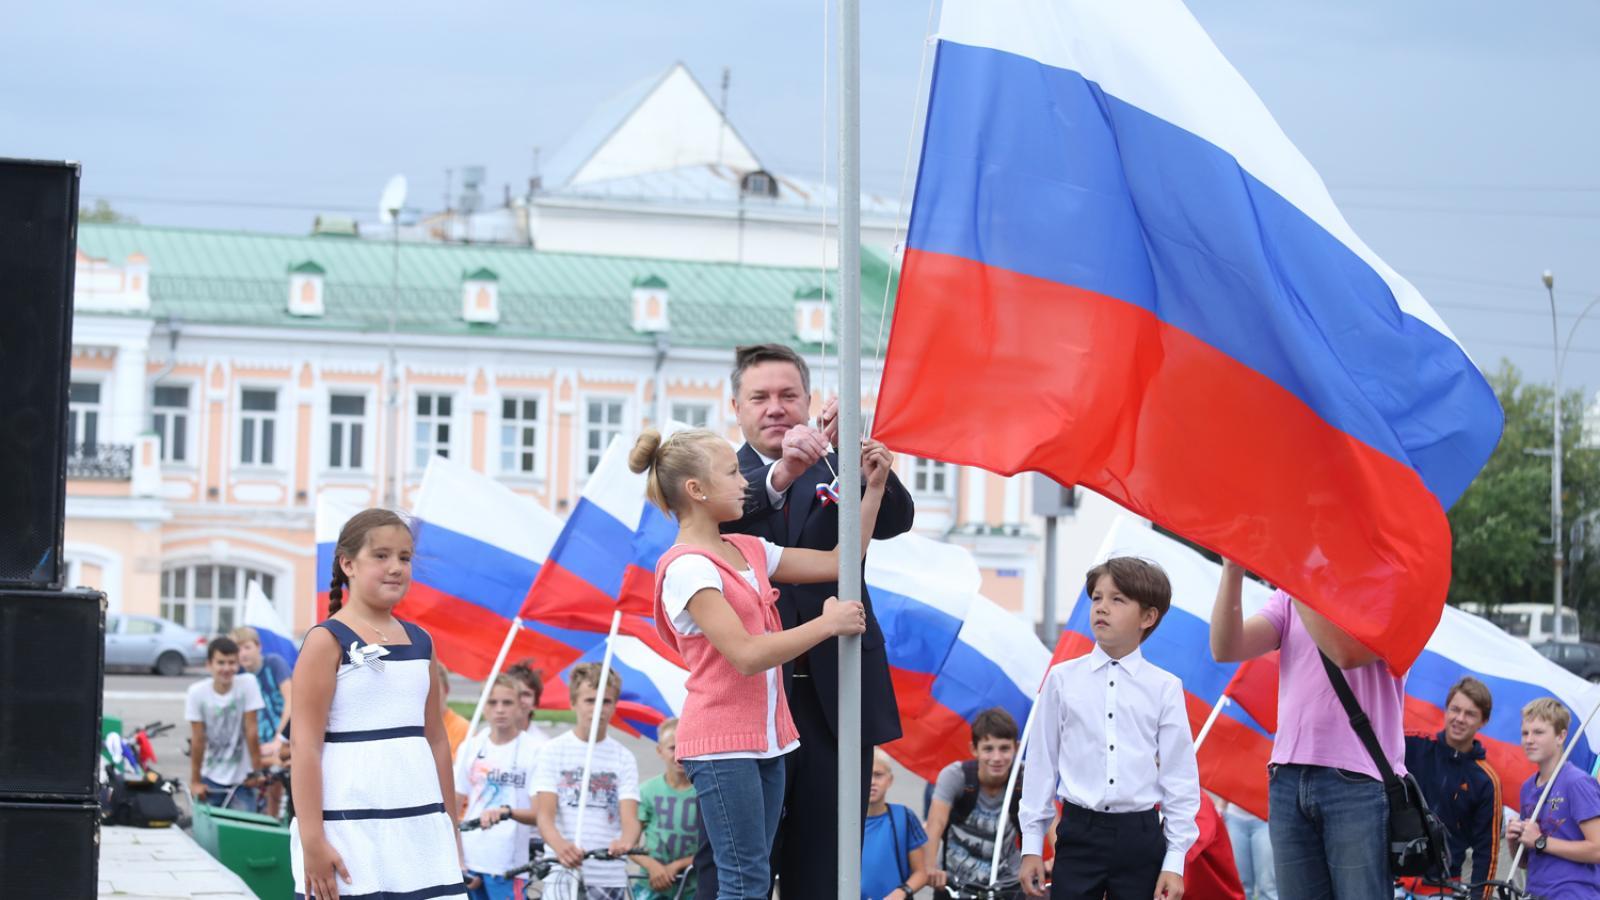 Покупка флагов для праздников обойдется администрации в 1,7 миллионов рублей